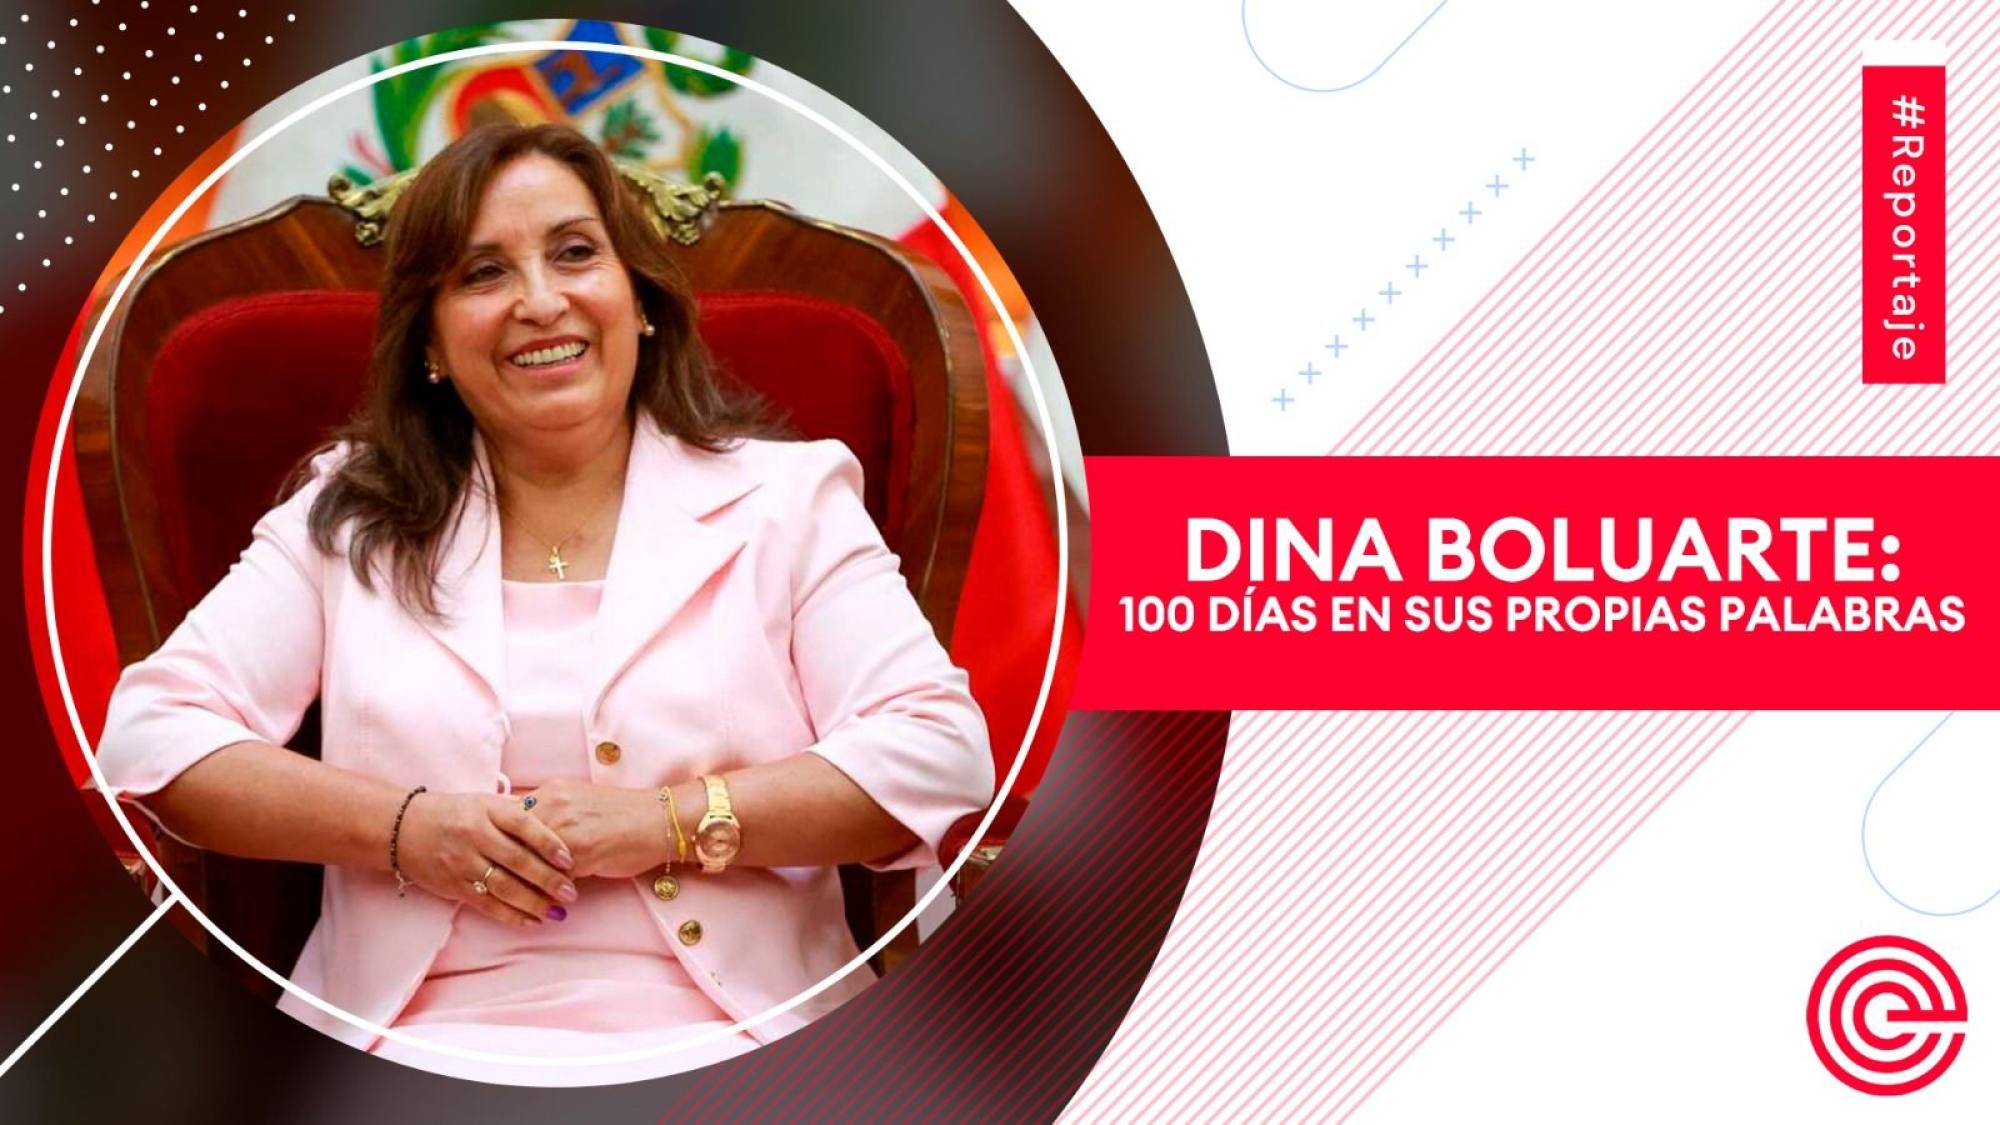 Dina Boluarte: 100 días en sus propias palabras, Epicentro TV